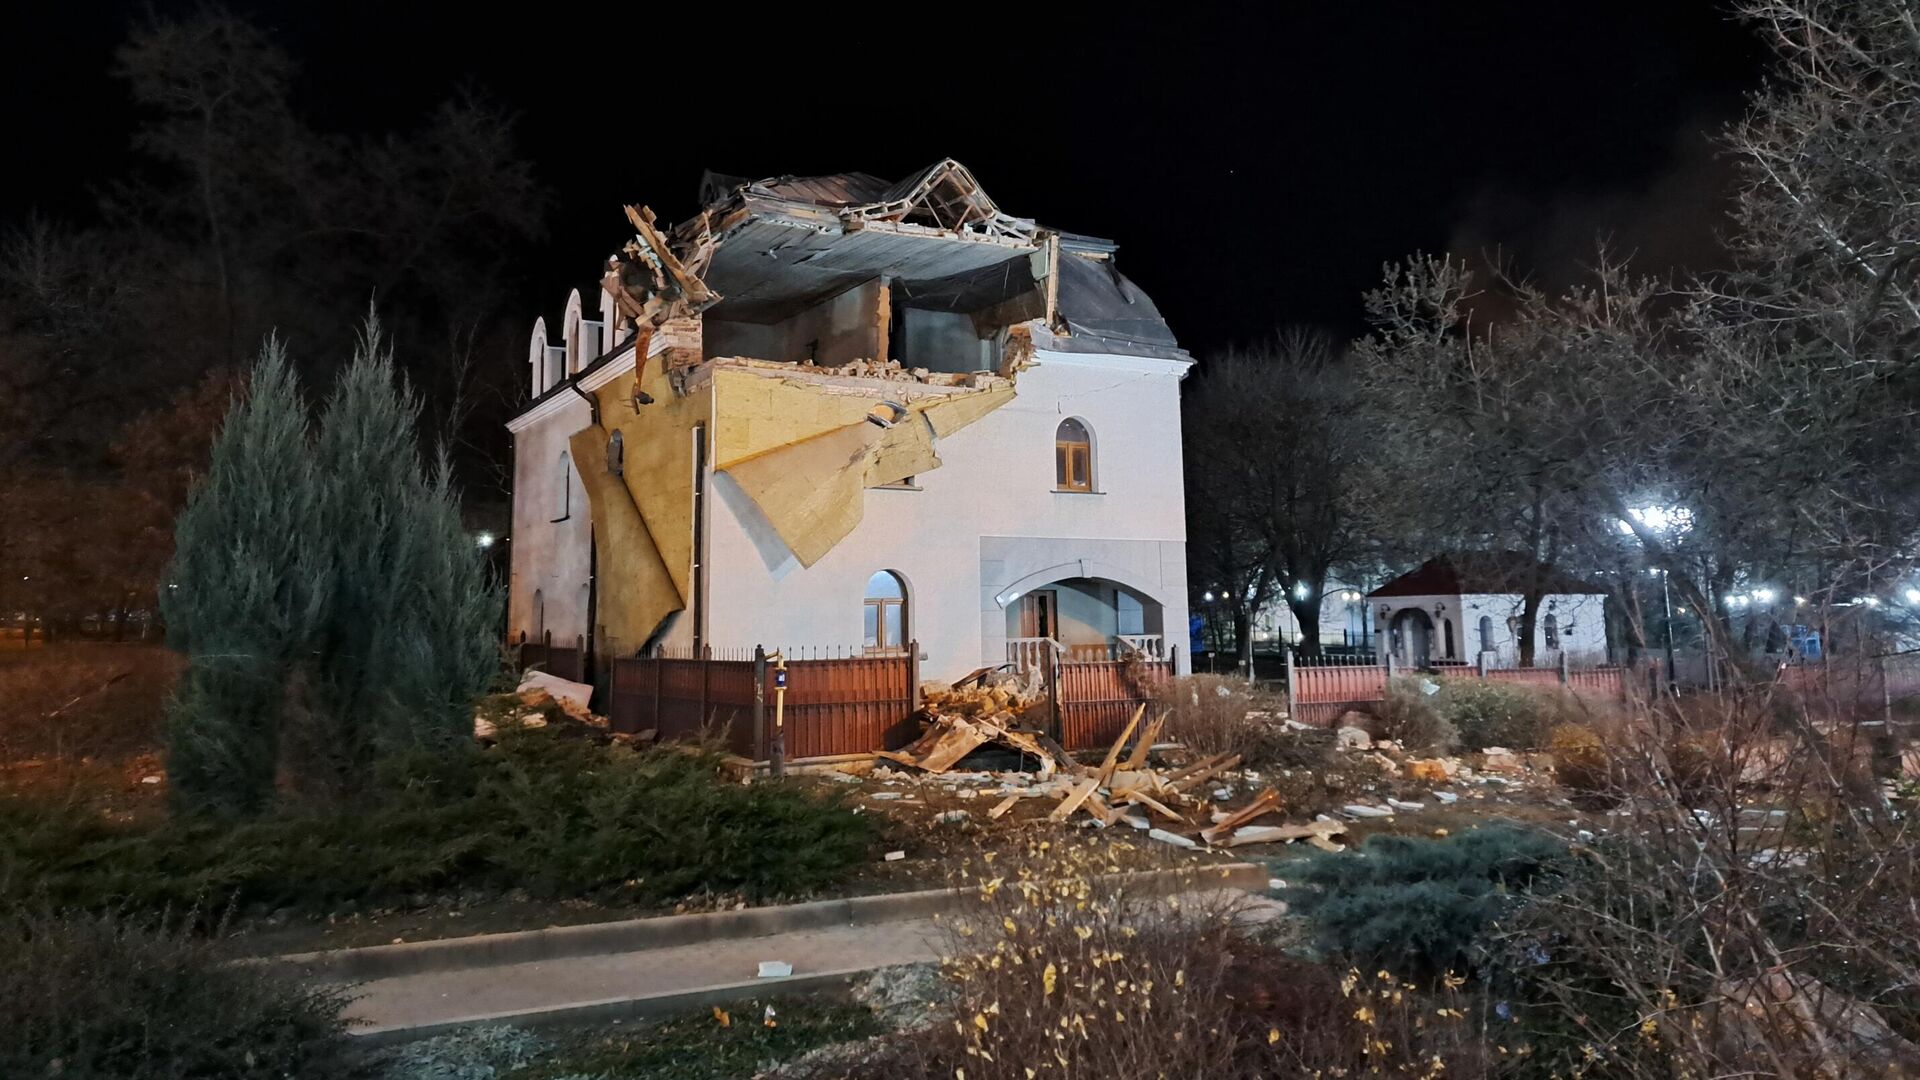 Catedrala Nașterii Domnului Hristos, lovită de un obuz lansat de militarii ucraineni asupra orașului Donețk - Sputnik Moldova, 1920, 10.12.2022